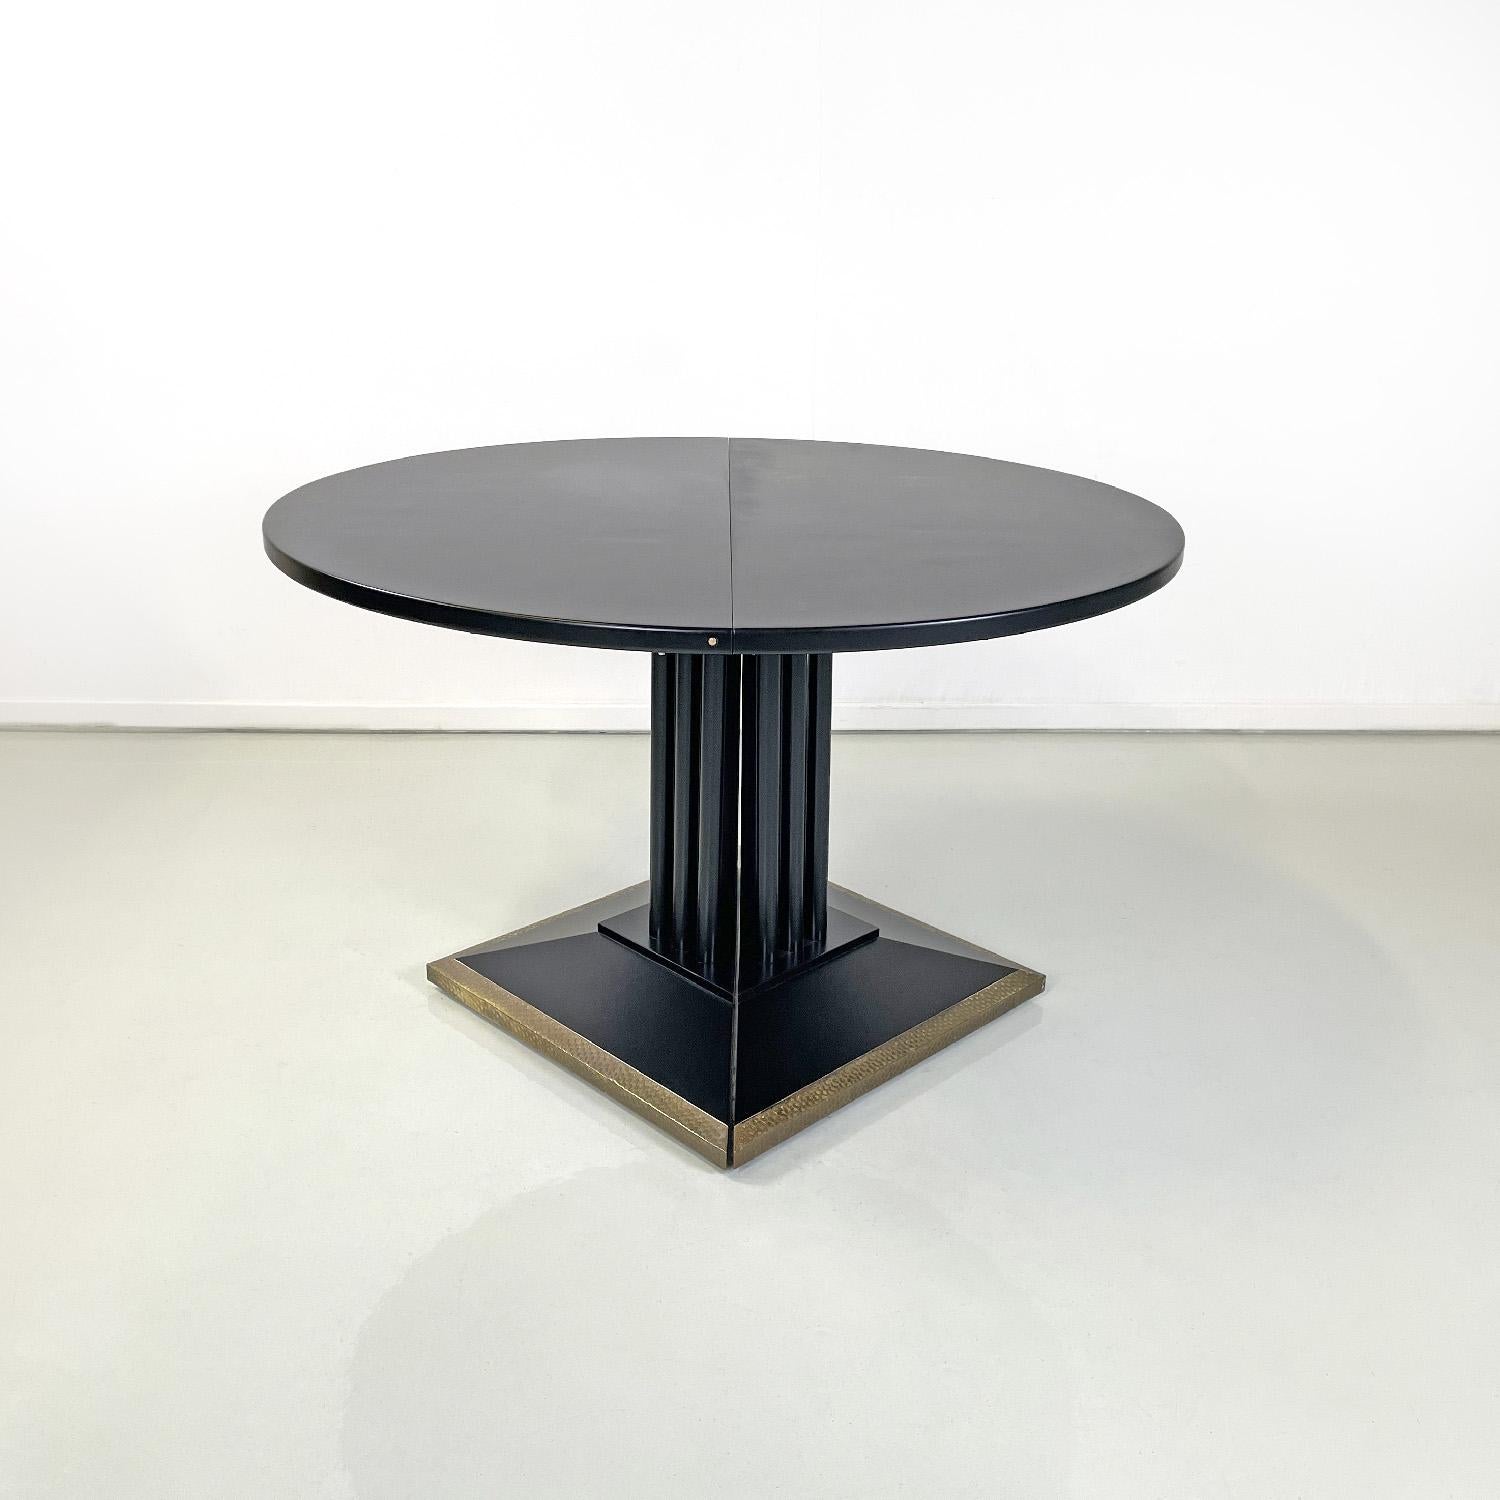 Table de salle à manger italienne moderne extensible noire et dorée par Thonet, années 1990
Table de salle à manger ronde à rallonge en bois laqué noir avec finition mate. Cette table peut être ouverte et il est possible d'y ajouter jusqu'à deux